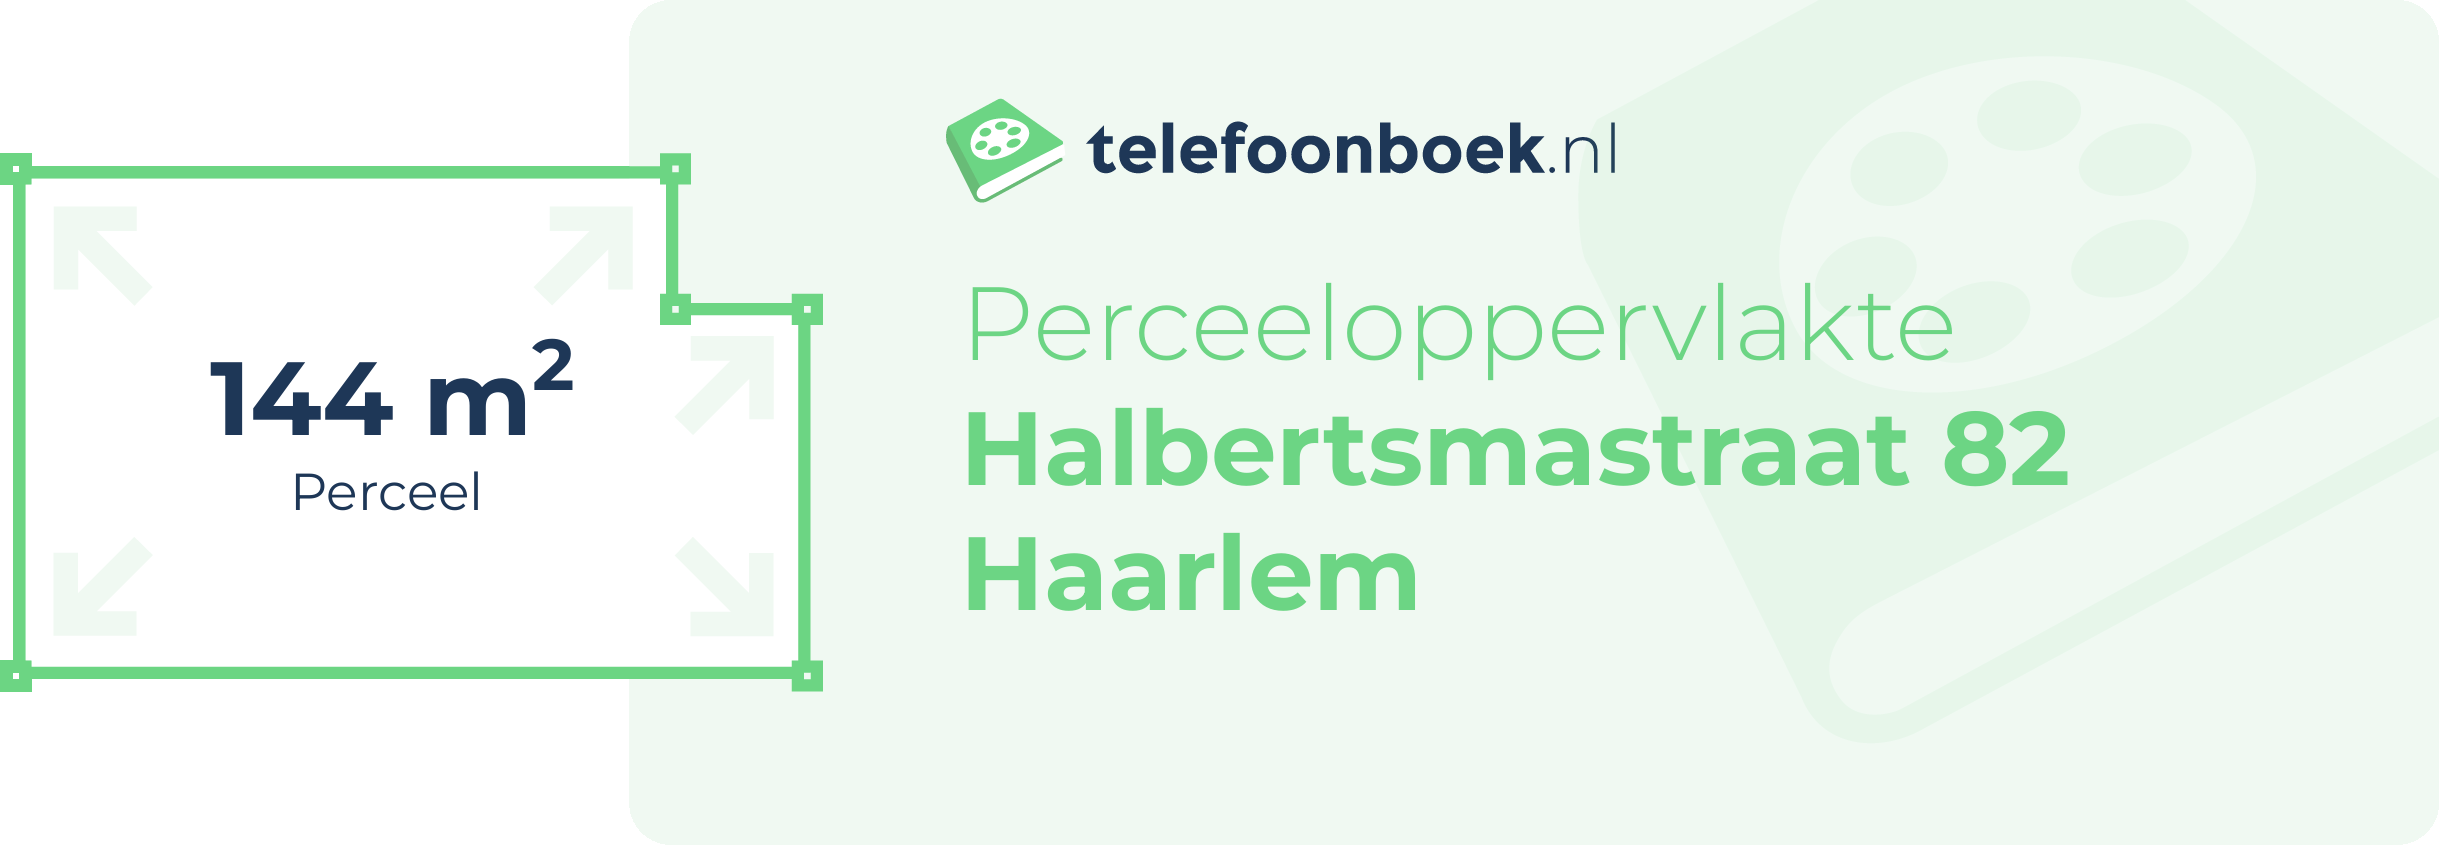 Perceeloppervlakte Halbertsmastraat 82 Haarlem